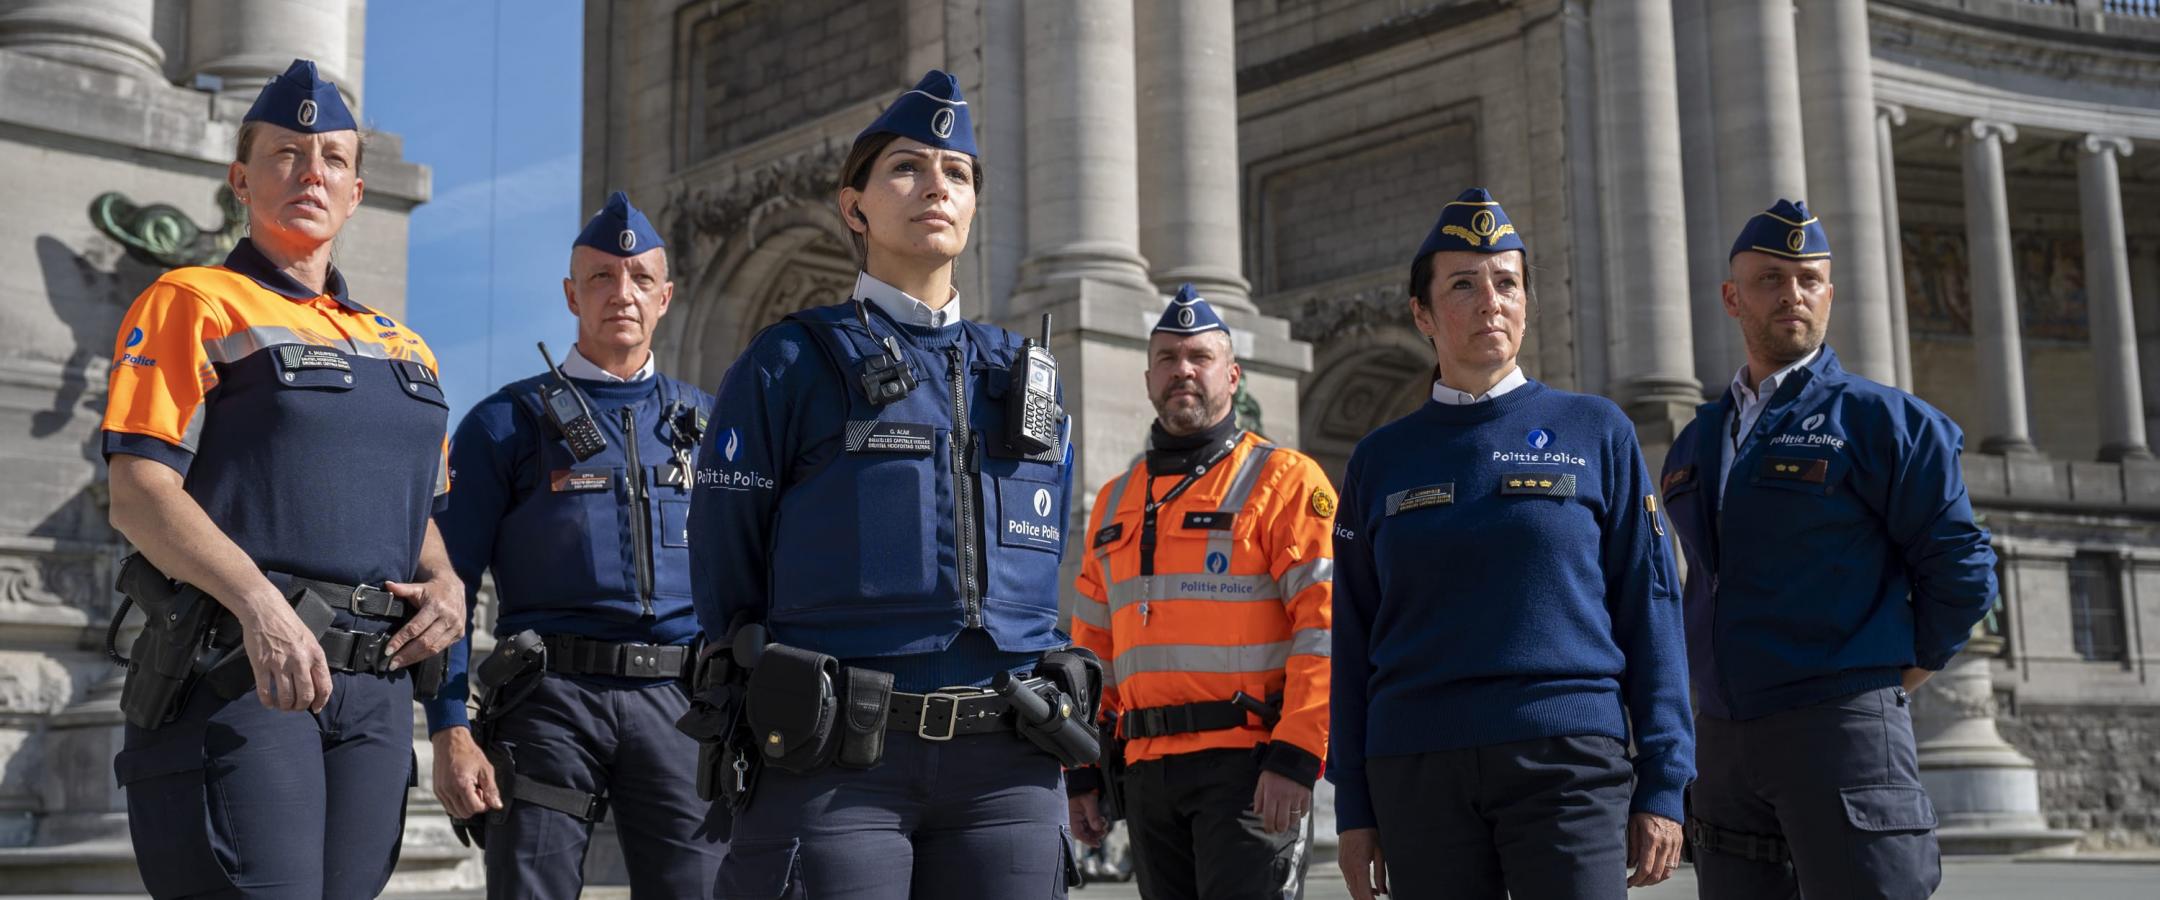 Groepsfoto met een agent, beveiligingsagent, een vrouwelijke inspecteur, een hoofdinspecteur motard, een commissaris en een vrouwelijke hoofdcommissaris